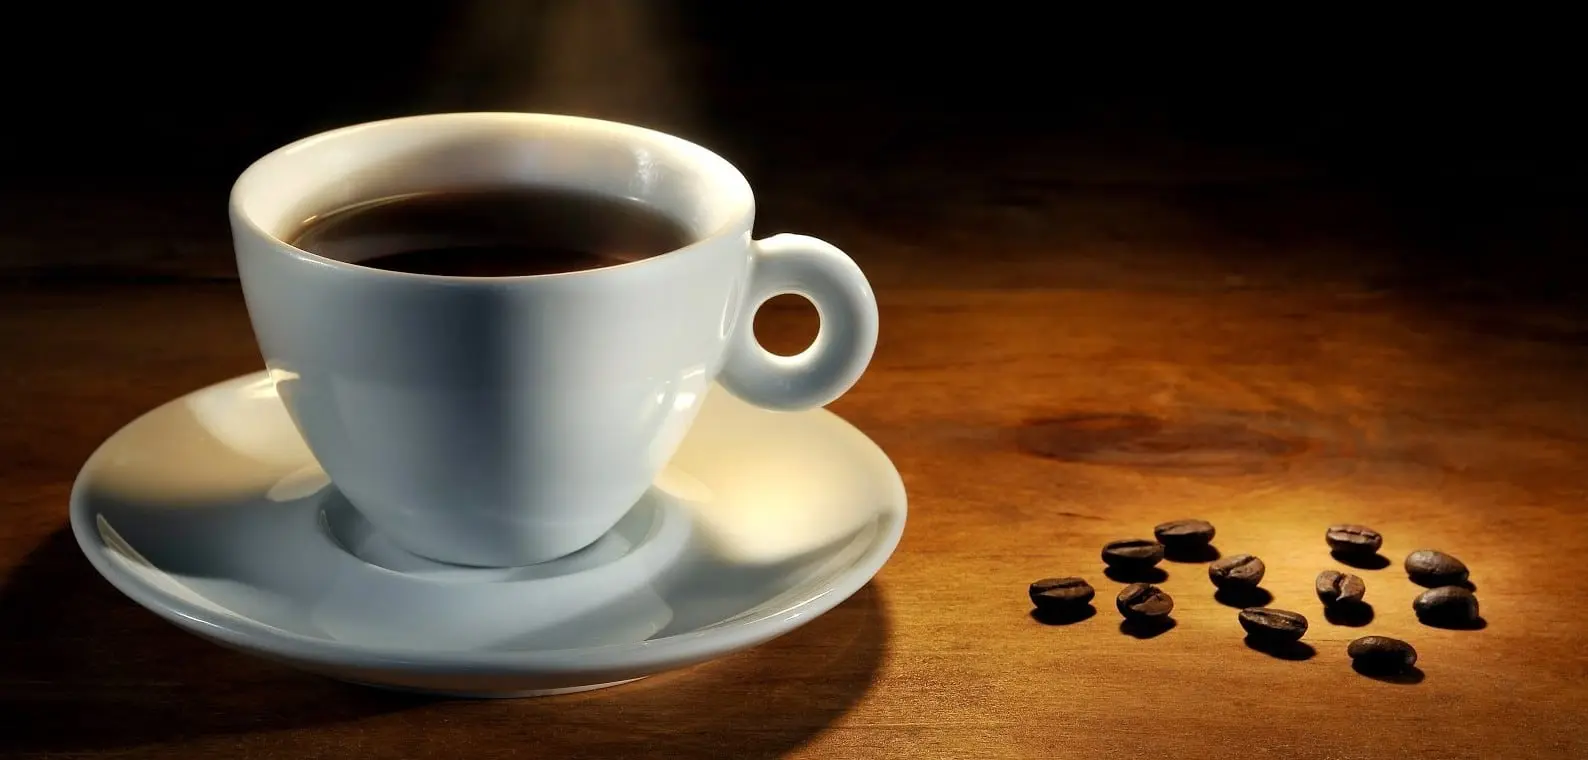 inconvenientes del cafe descafeinado - Cuántas tazas de café descafeinado puede tomar al día